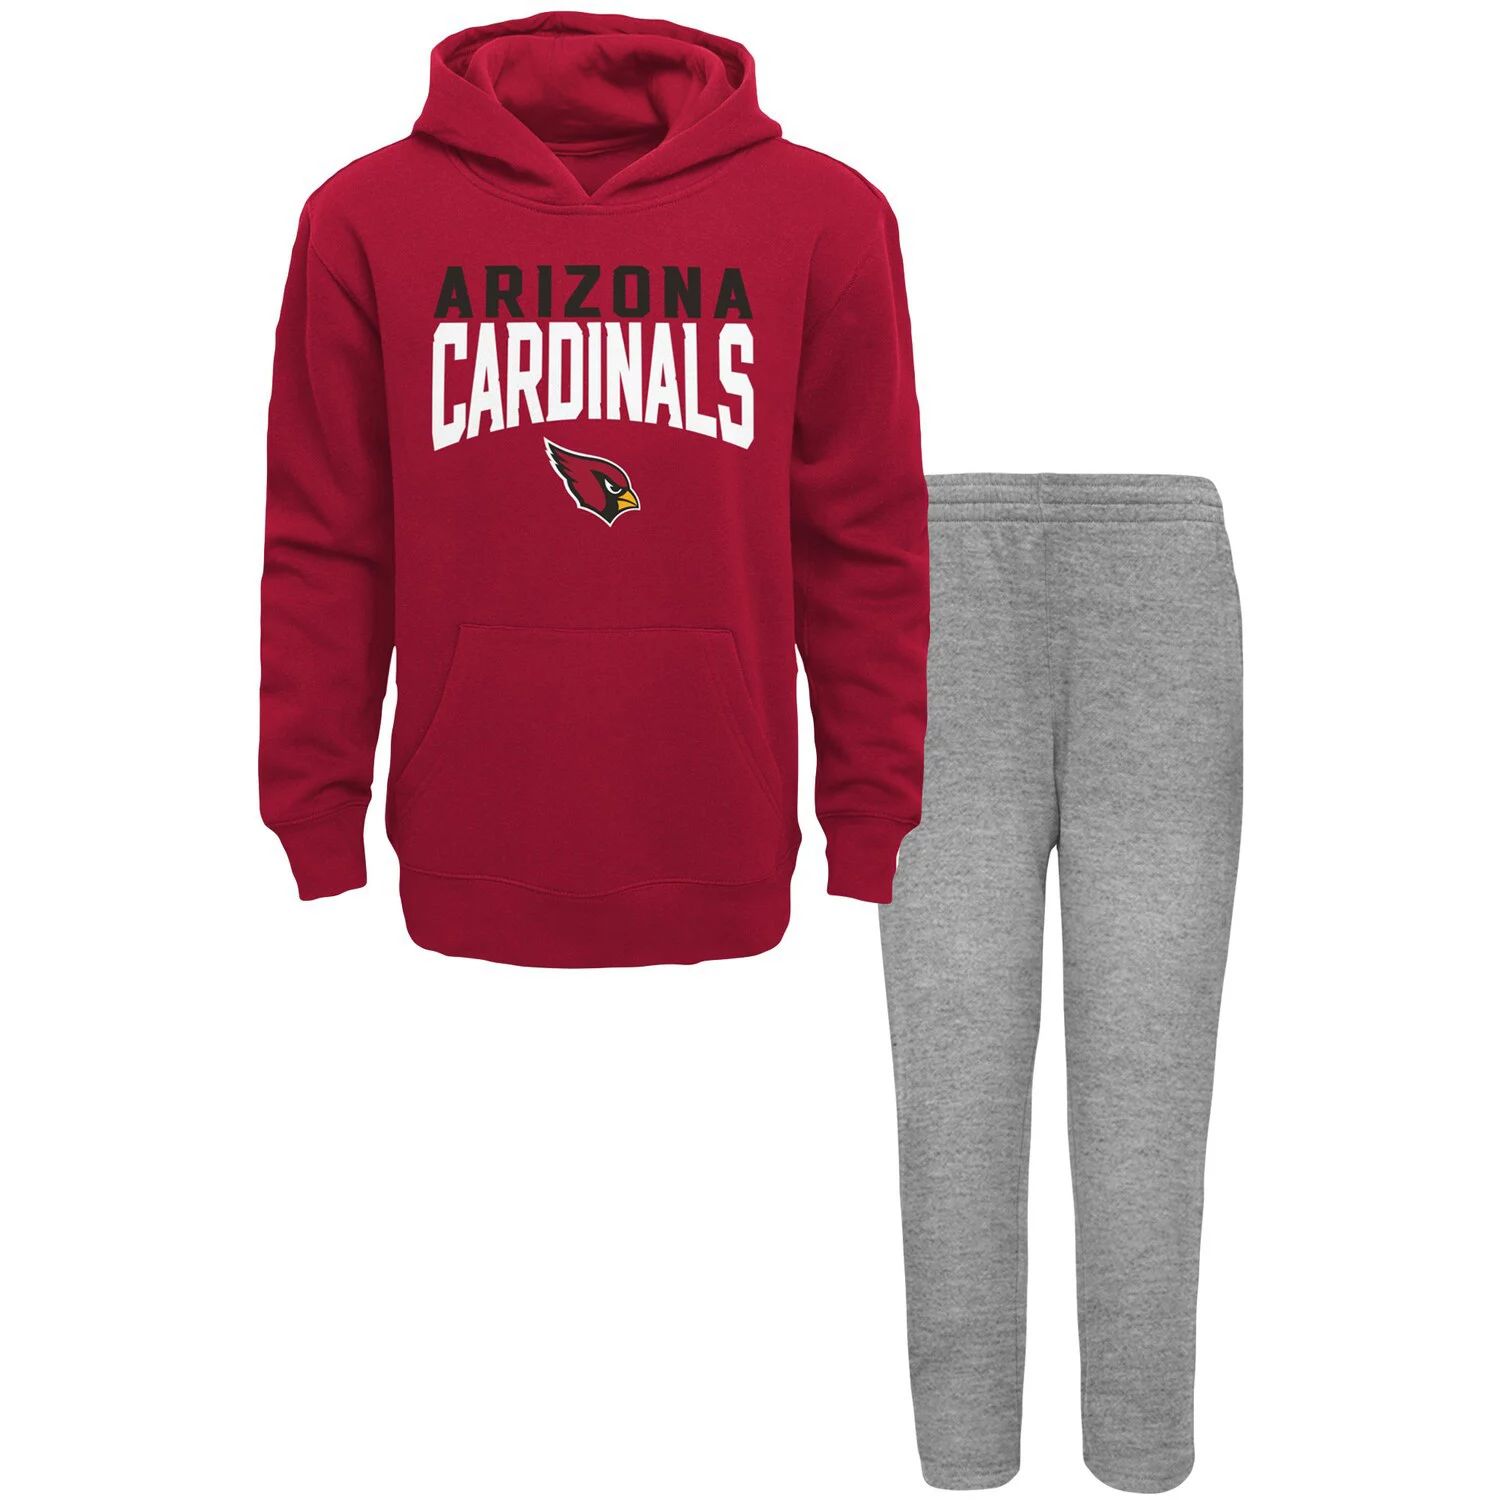 Комплект из расклешенного пуловера с капюшоном и спортивных штанов для малышей Cardinal/Heathered Grey Arizona Cardinals Outerstuff